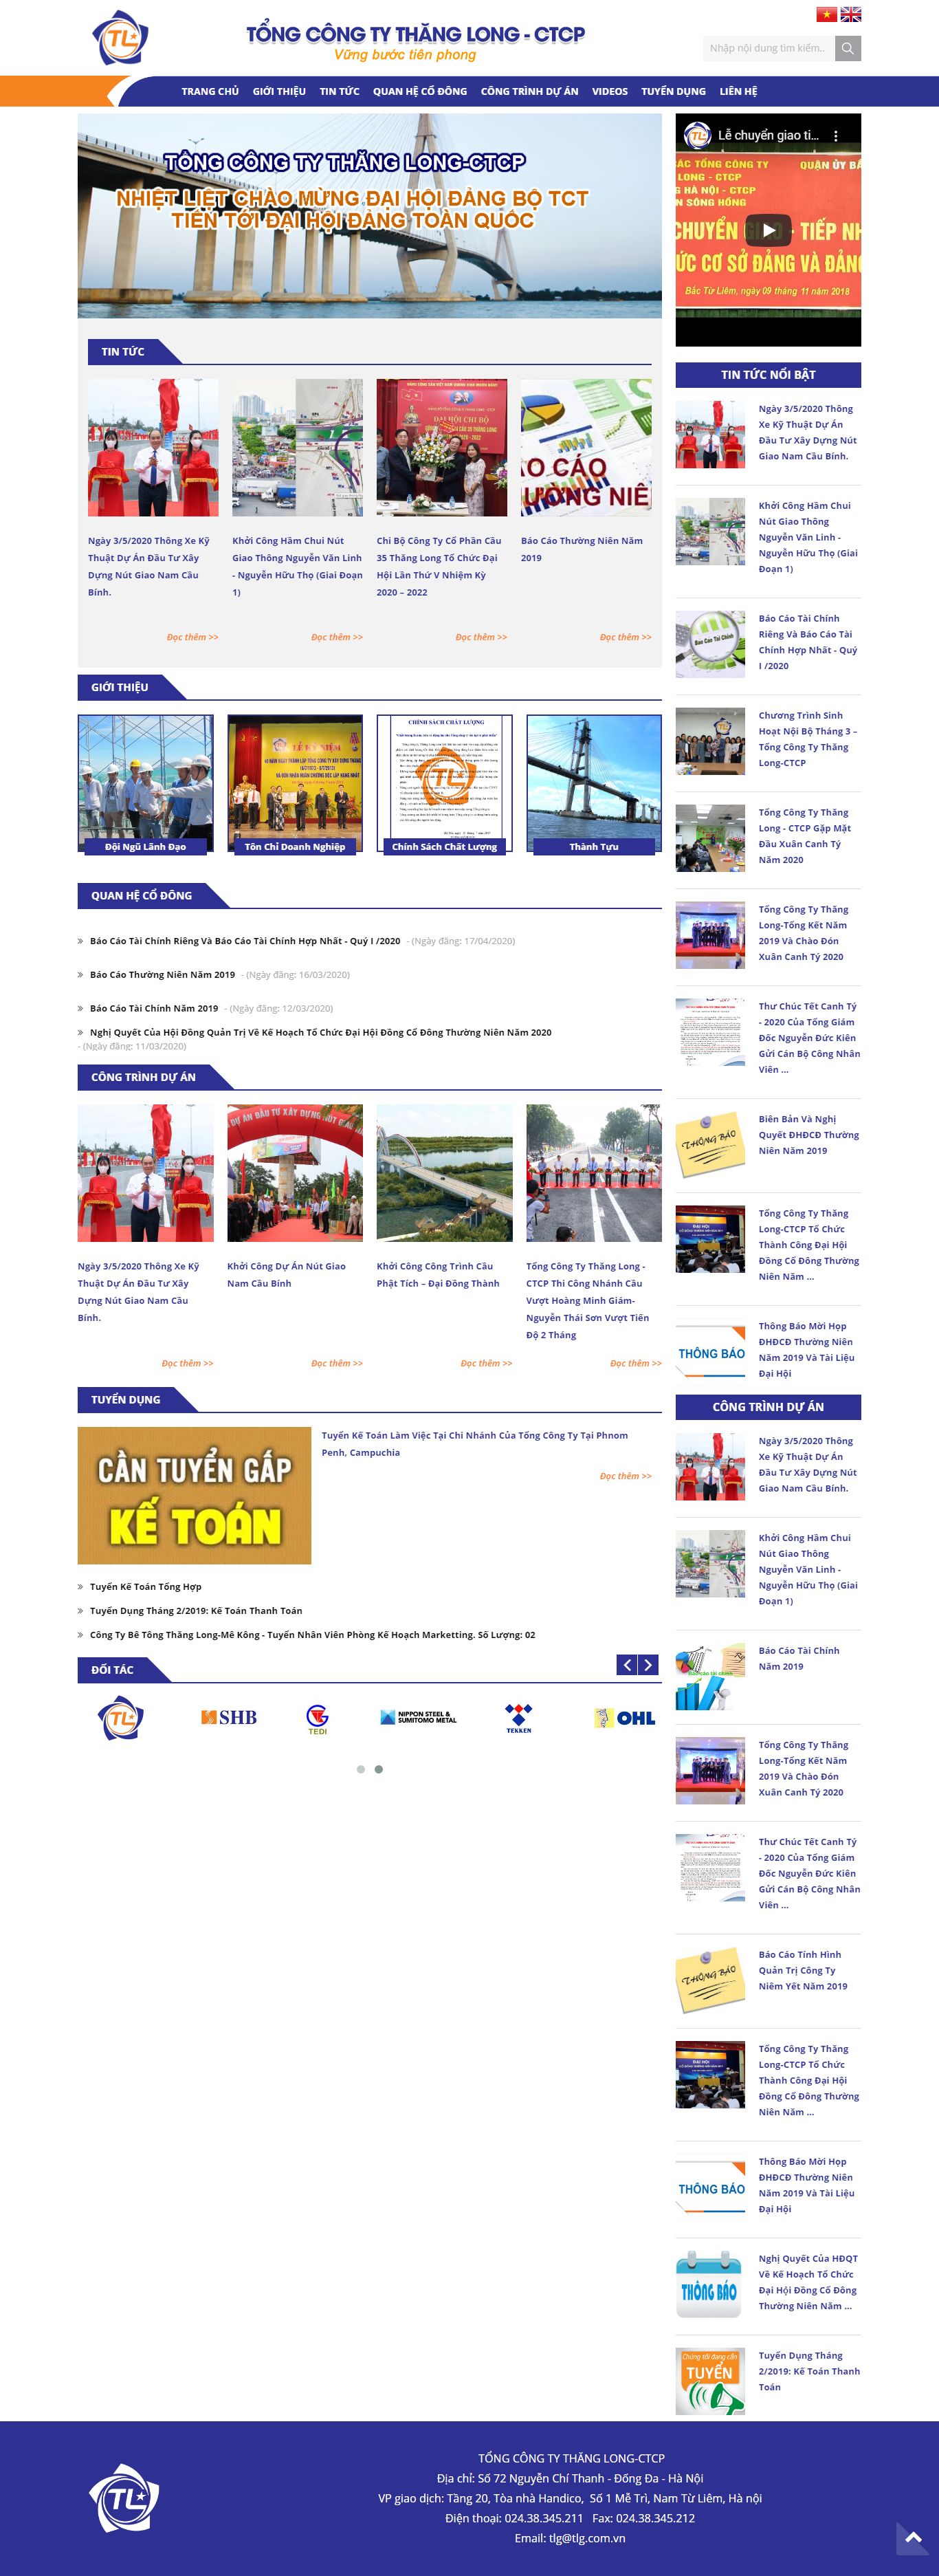 Thiết kế Website trang vàng doanh nghiệp - www.tlg.com.vn